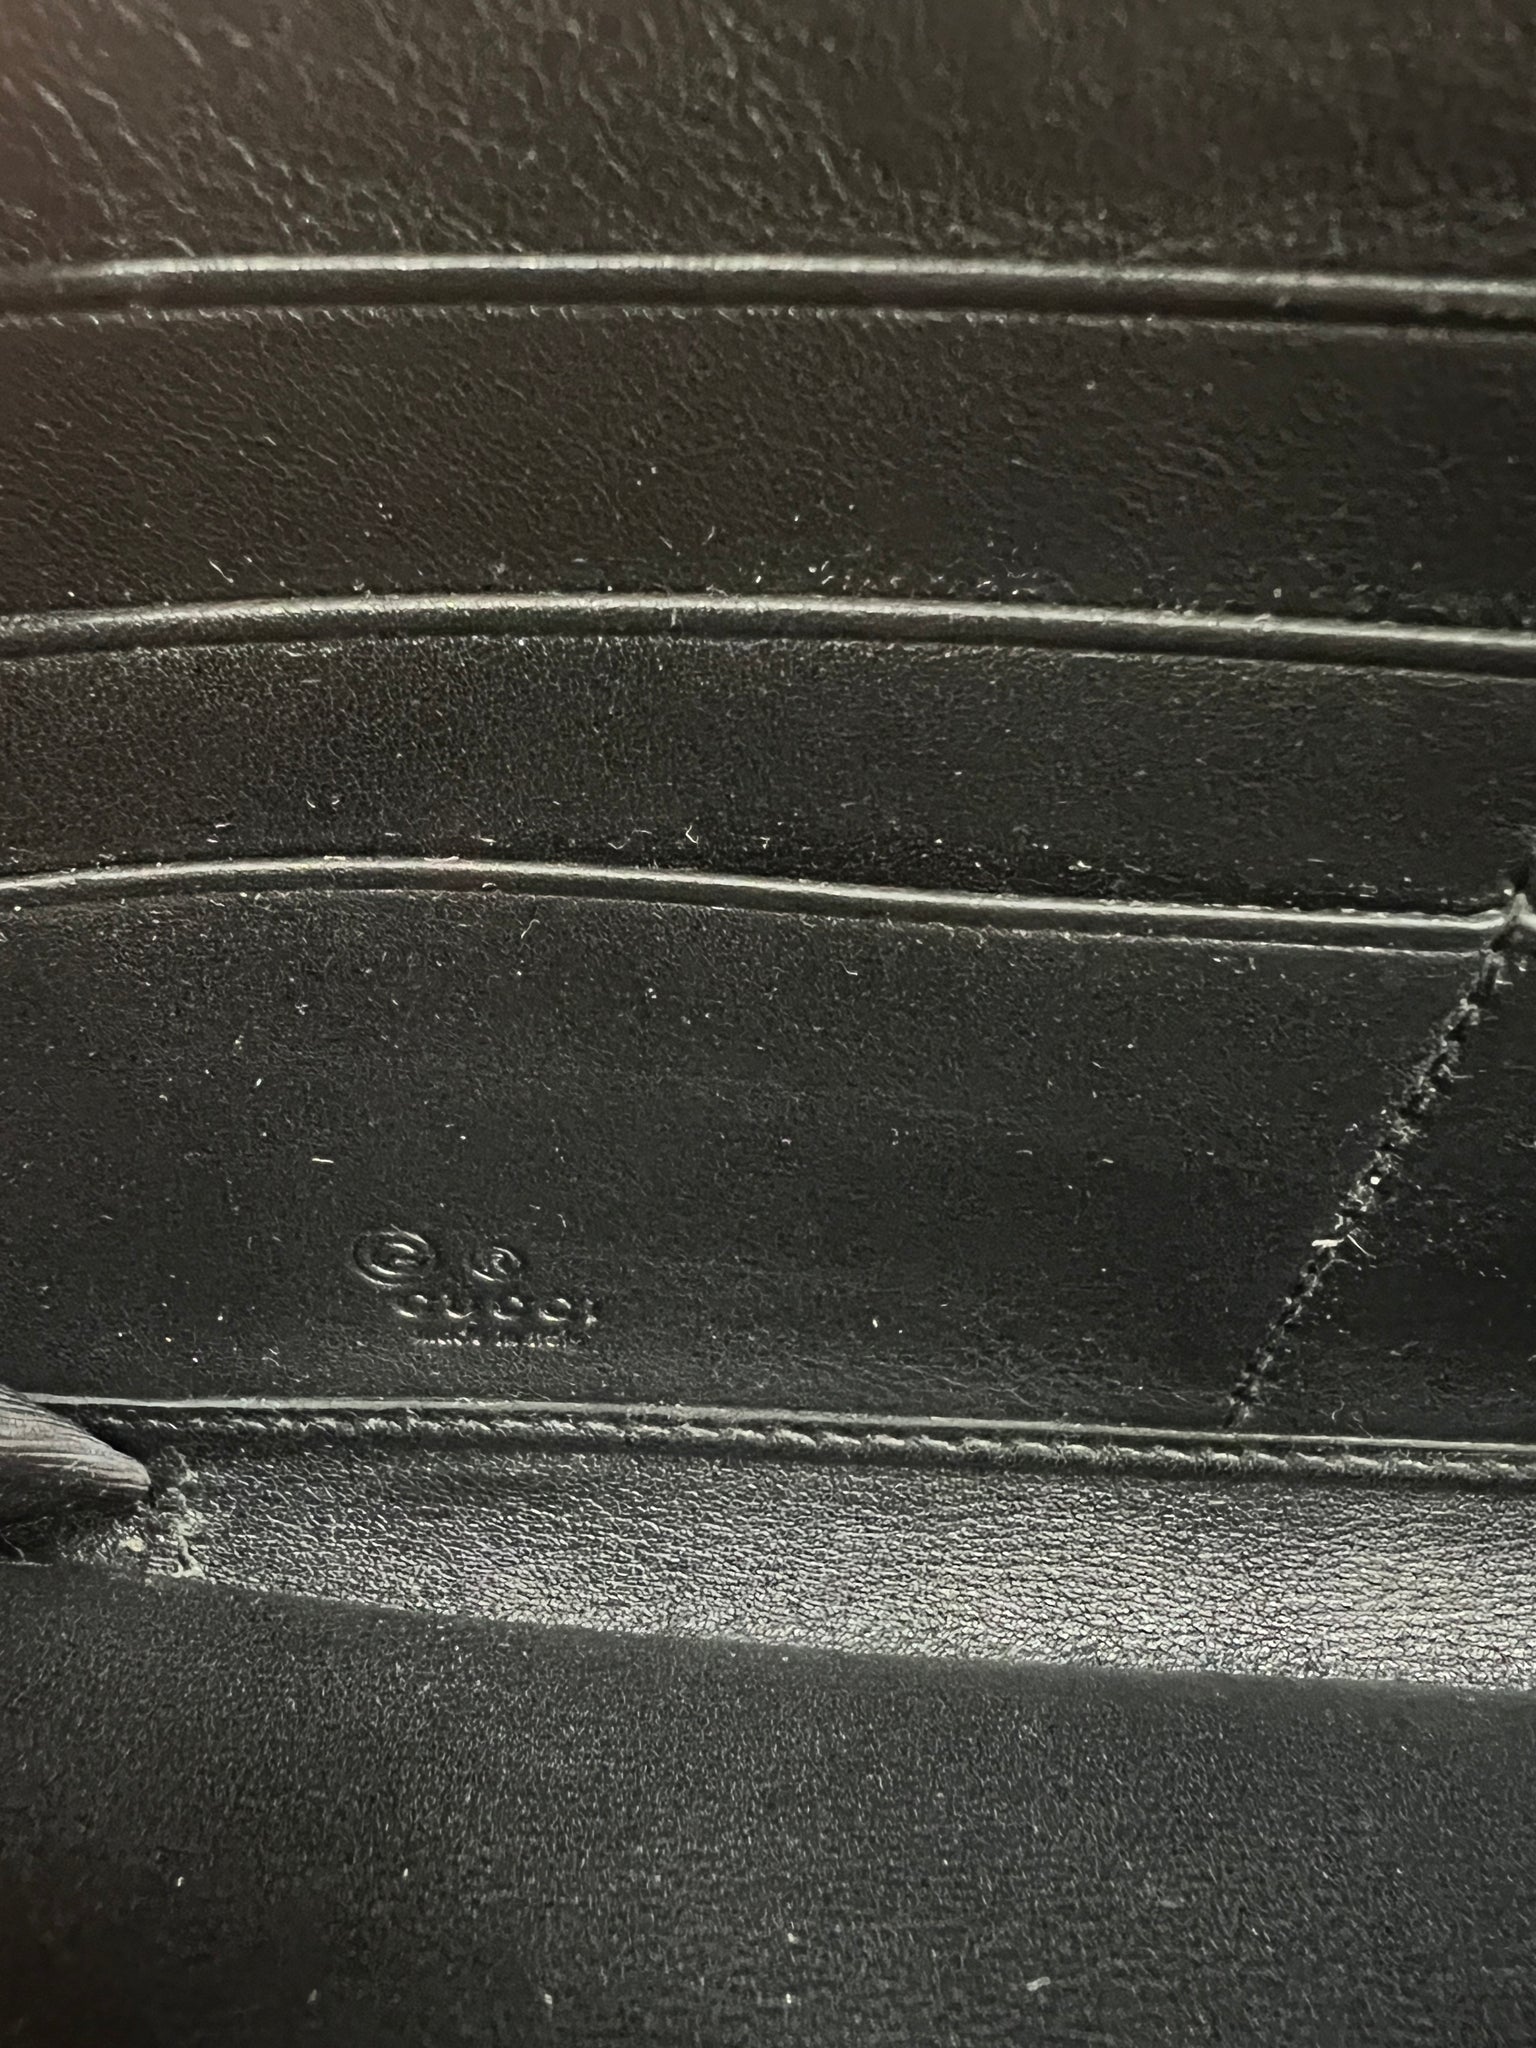 GUCCI Micro GG Guccissima Leather Zip Around XL Wallet Dark Brown 3914